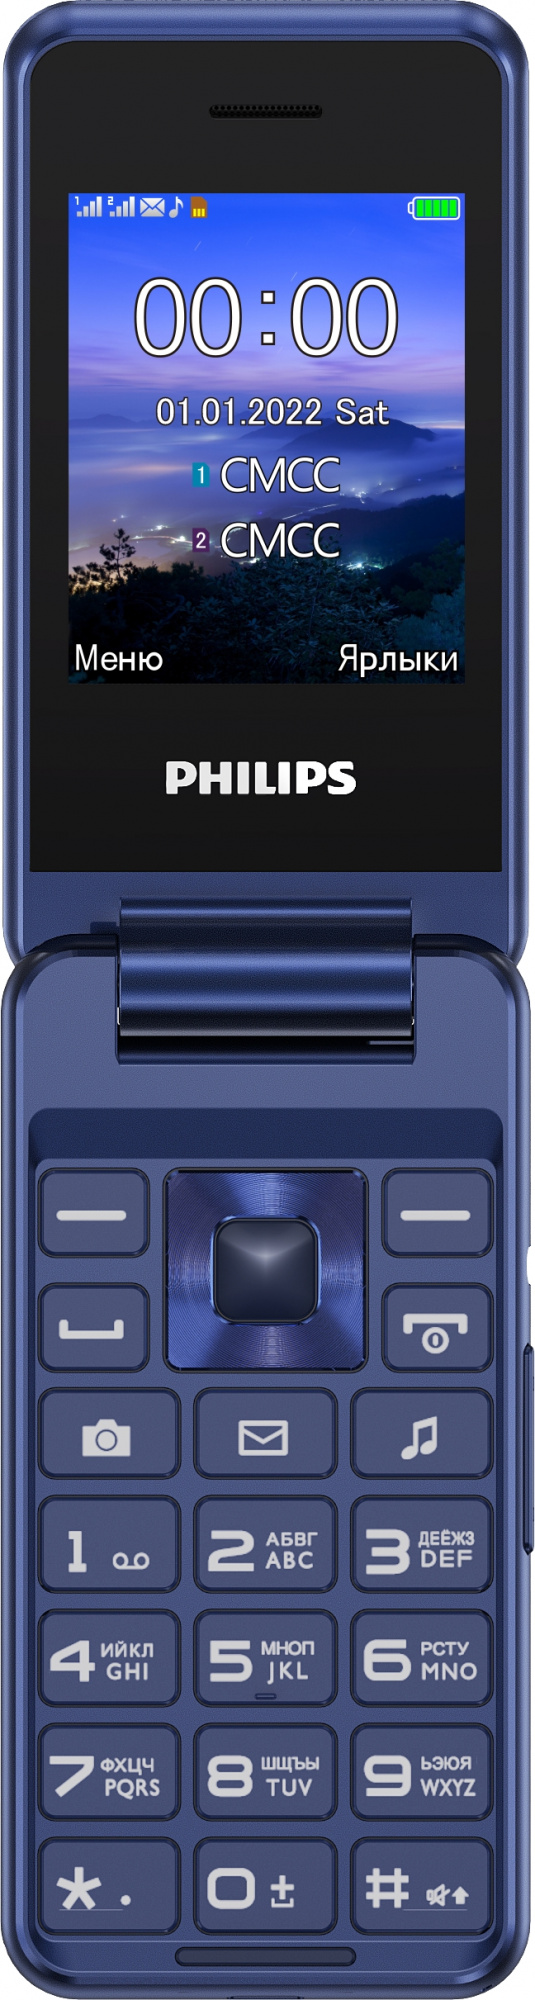 Мобильный телефон Philips E2601 Xenium синий раскладной 2Sim 2.4" 240x320 Nucleus 0.3Mpix GSM900/1800 FM microSD max32Gb